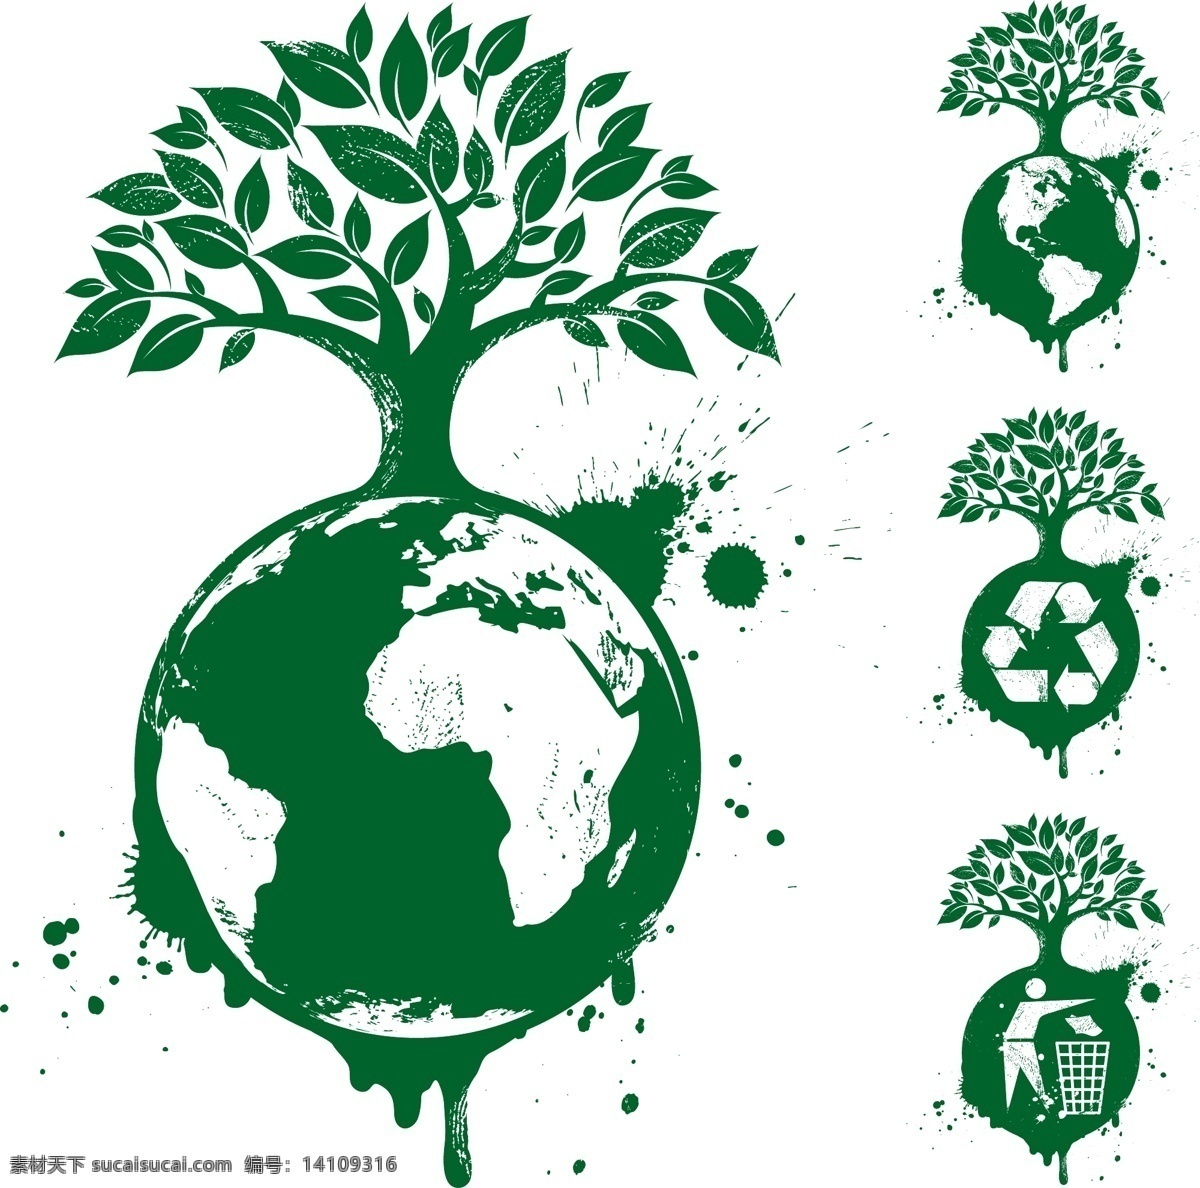 绿色环保 主题 矢量 矢量叶子 地球 创意设计 设计素材 绿色 绿叶 green 环保